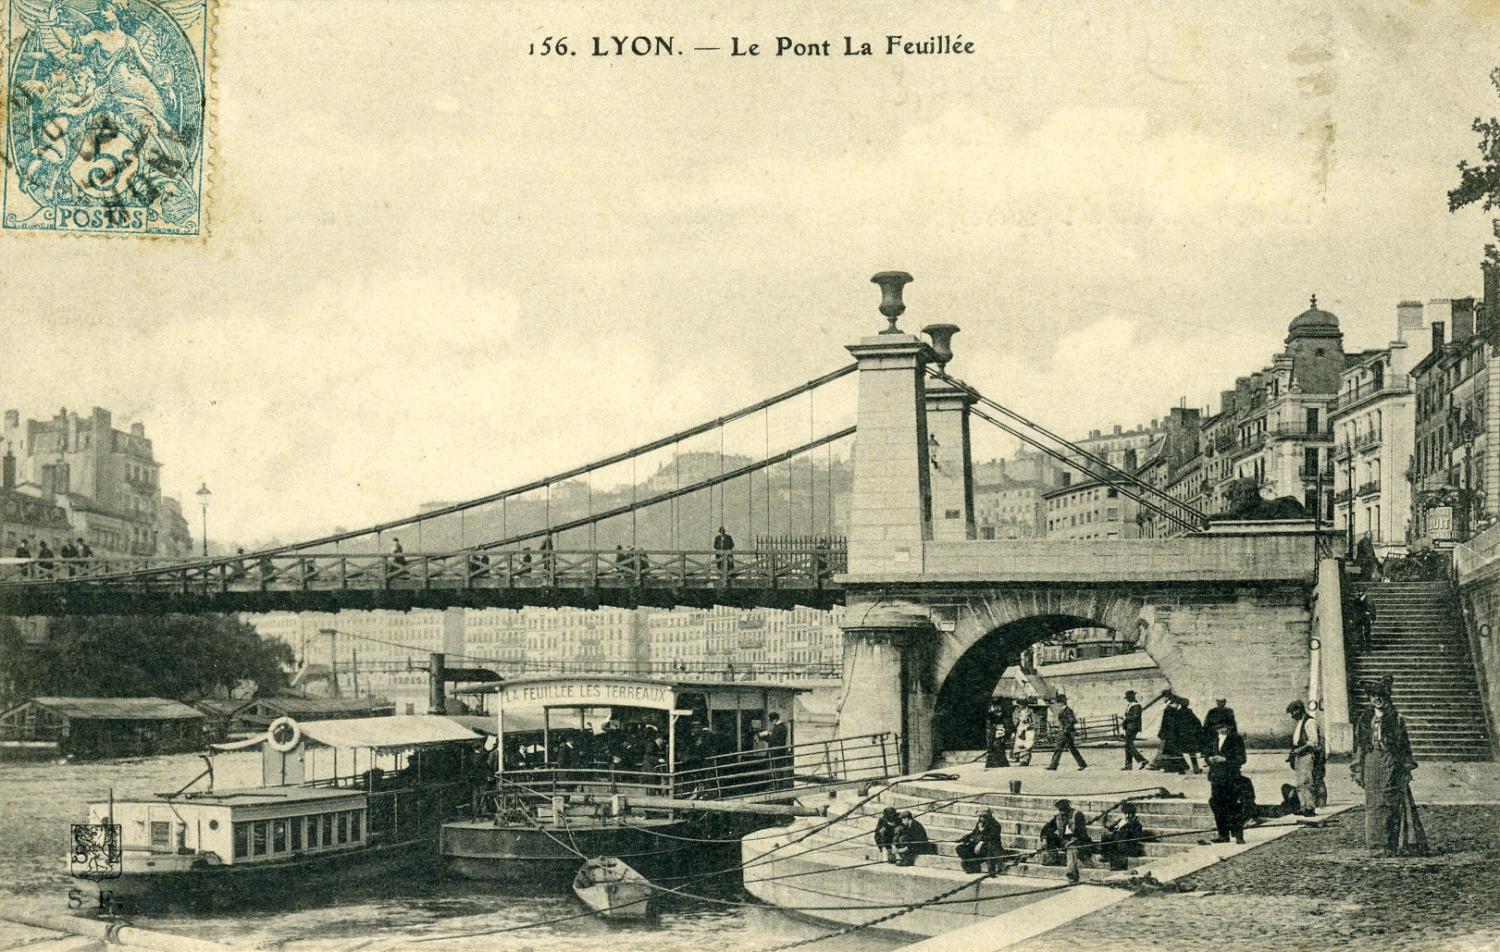 Lyon. - Le Pont de la Feuillée